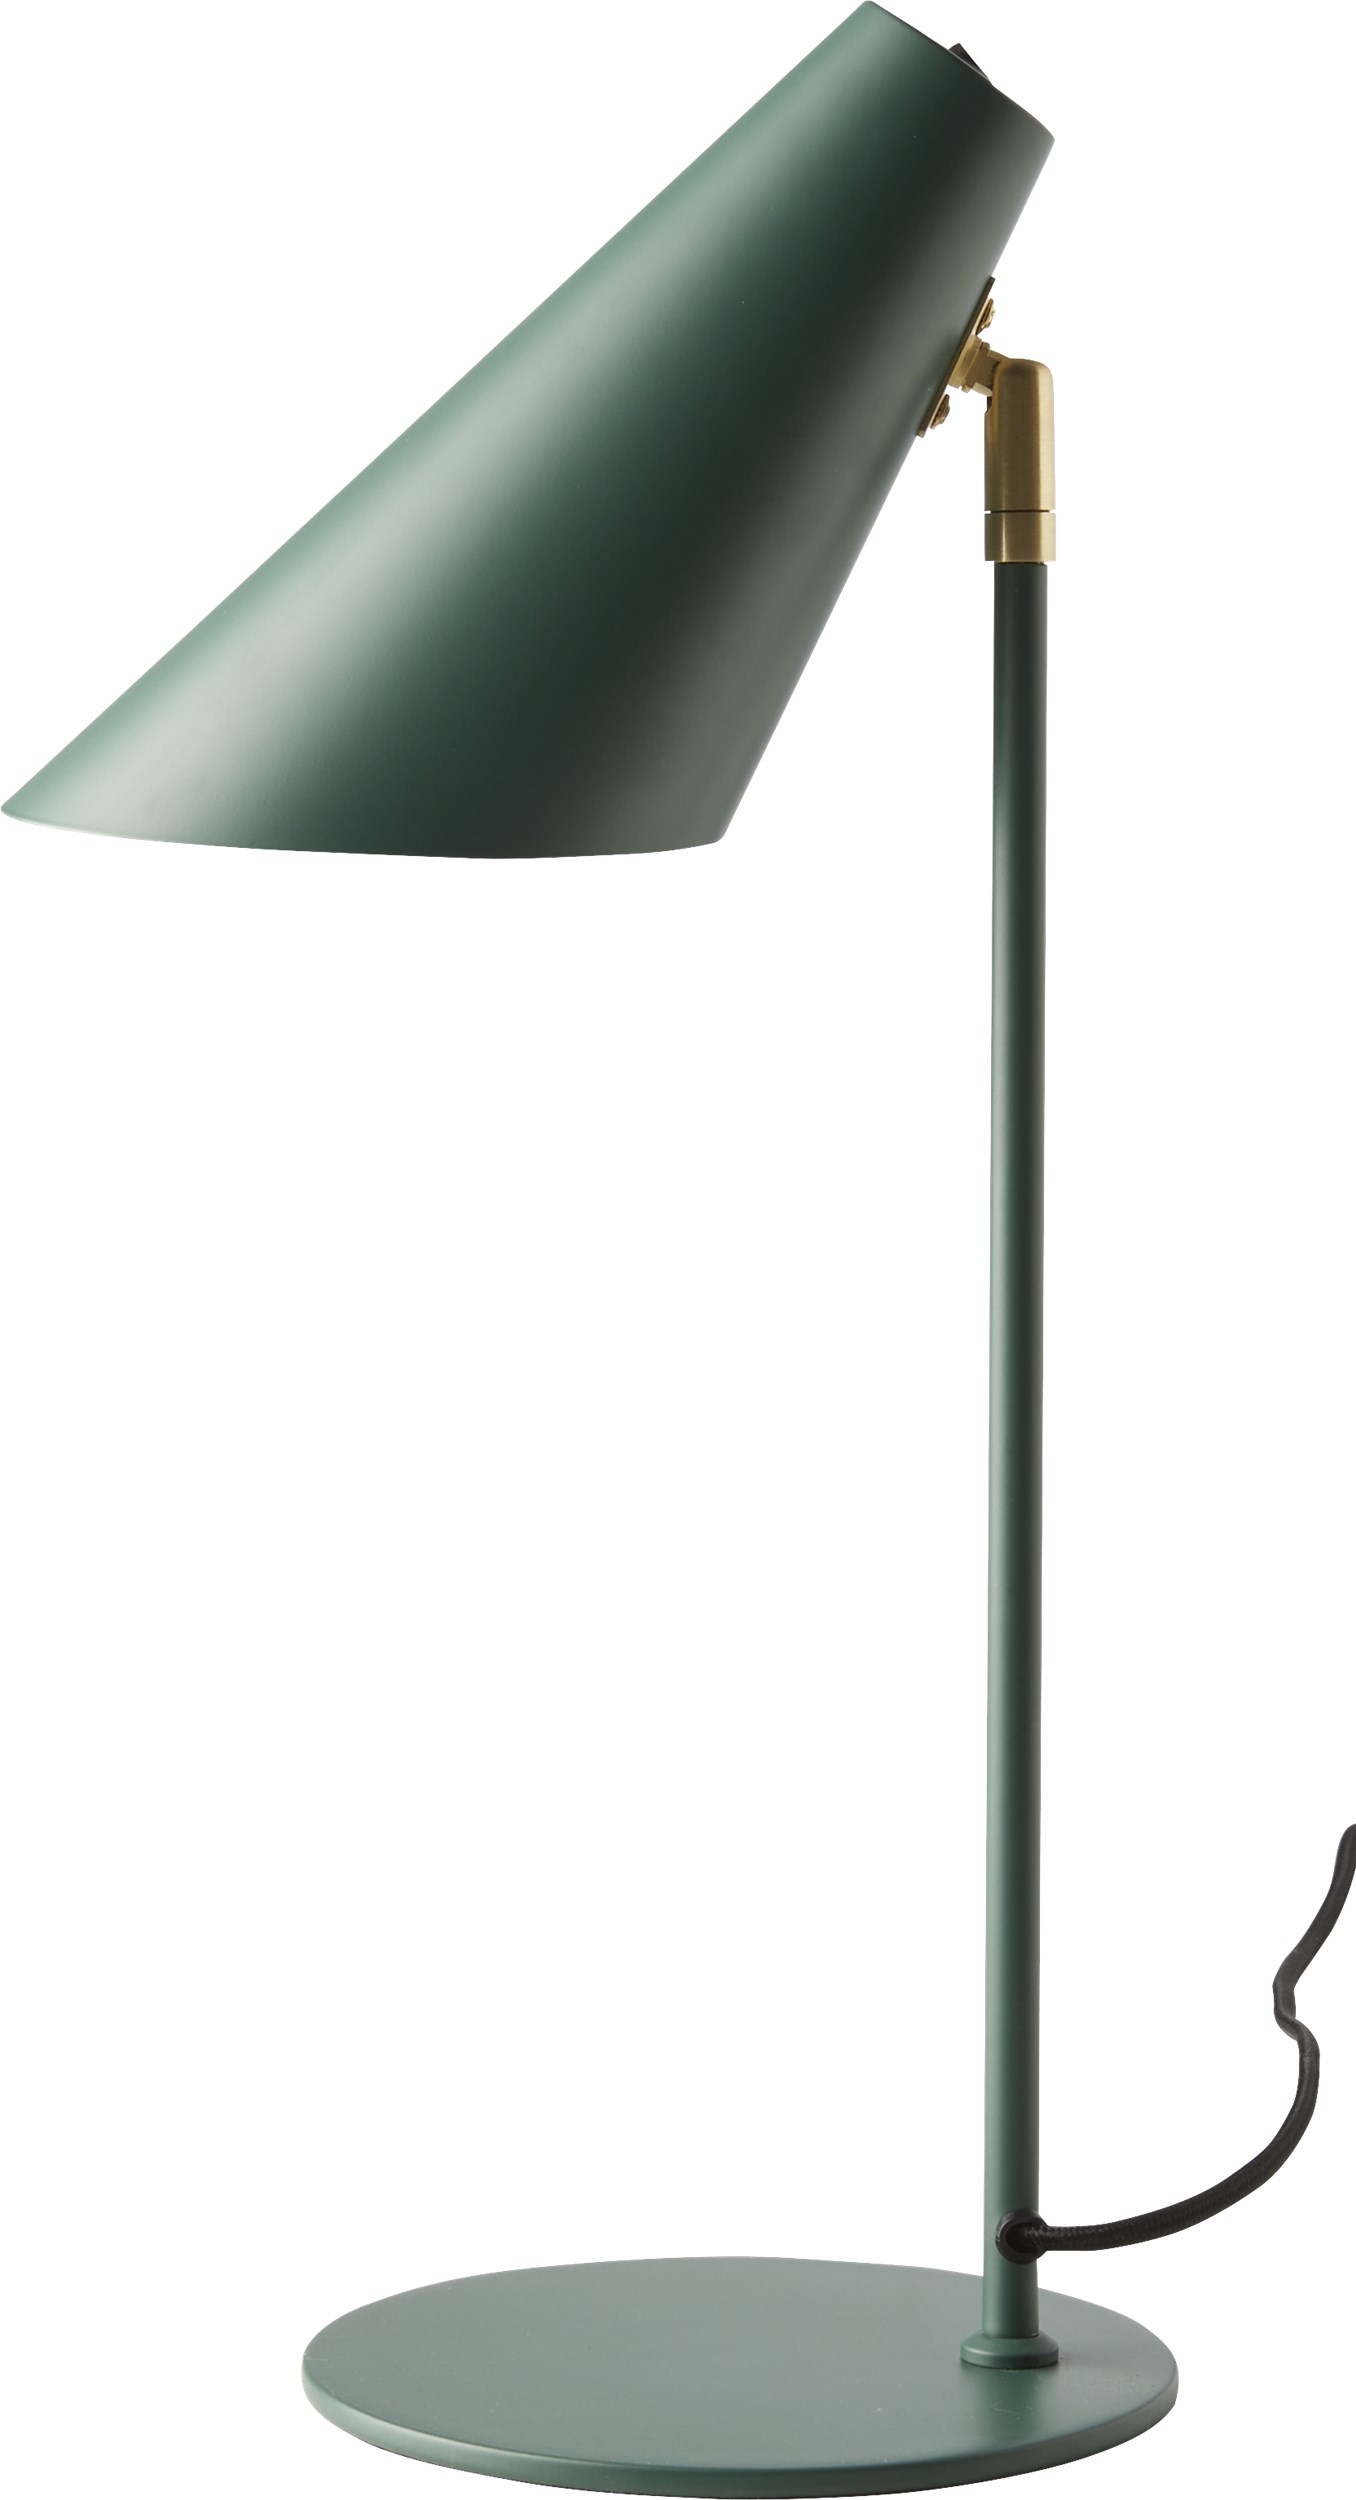 Cale Bordslampa 50 x 15,5 cm - Grön metallskärm/bas, stång i grönt/mässing och svart textilsladd